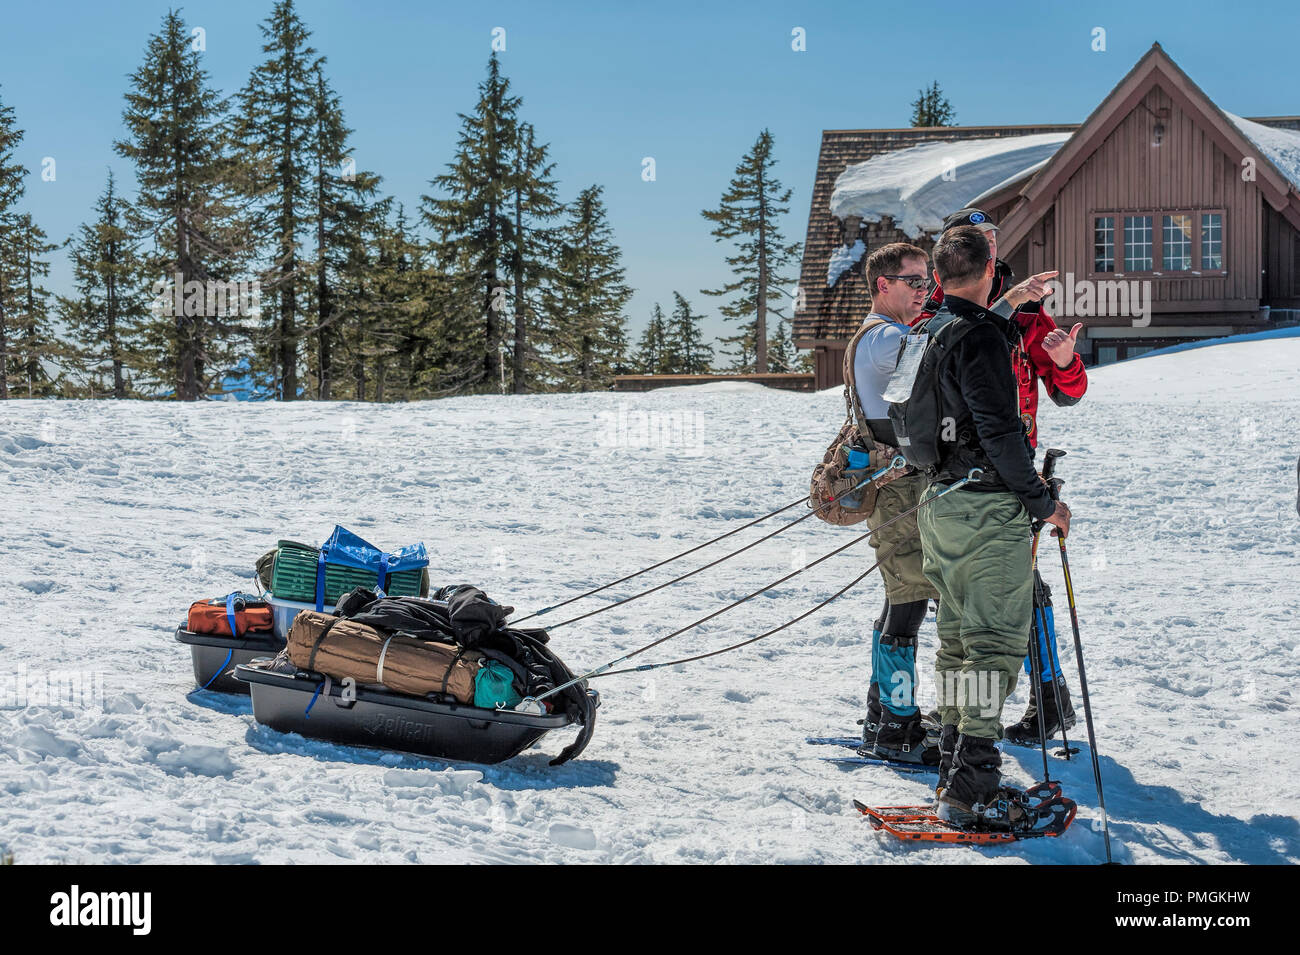 Di Crater Lake, Oregon, Stati Uniti d'America - 22 Marzo 2014: snow shoeing hilkers ottenere pronto per la testa fuori per il campeggio, tirando il loro ingranaggio dietro in slittini, presso il cratere del lago Foto Stock